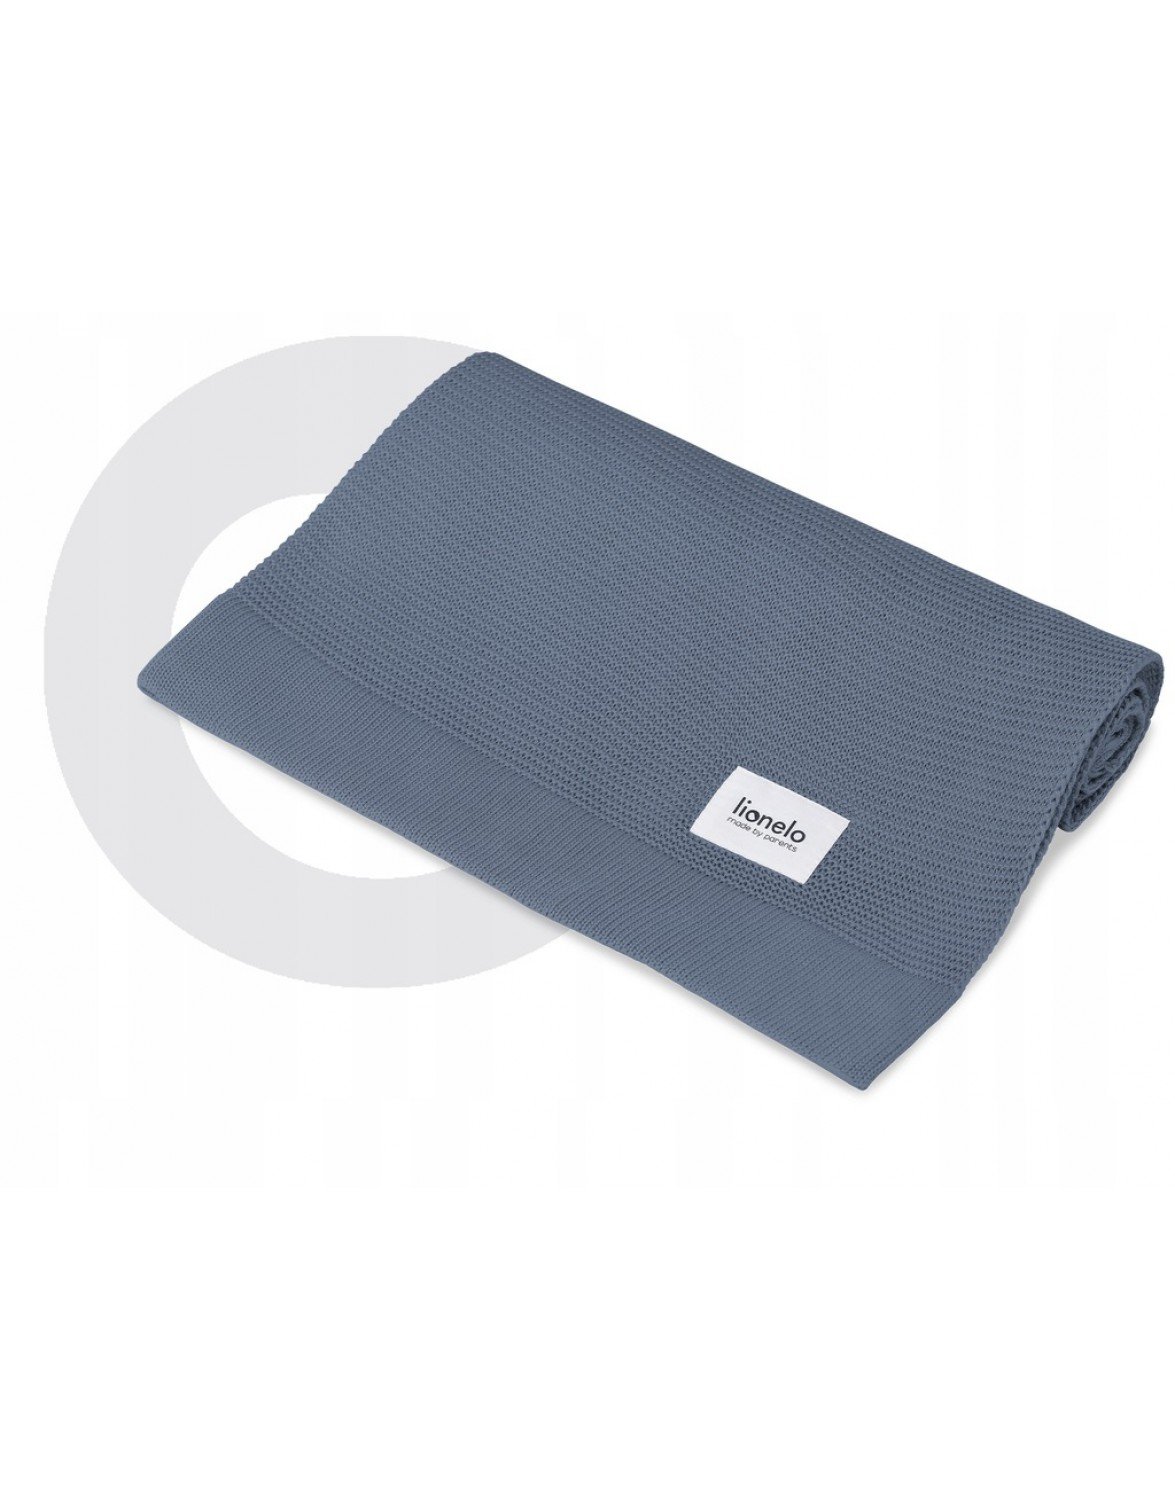 Одеяло Lionelo Bamboo Blanket Blue, 100х75 см, голубое (LO-BAMBOO BLANKET BLUE) - фото 3